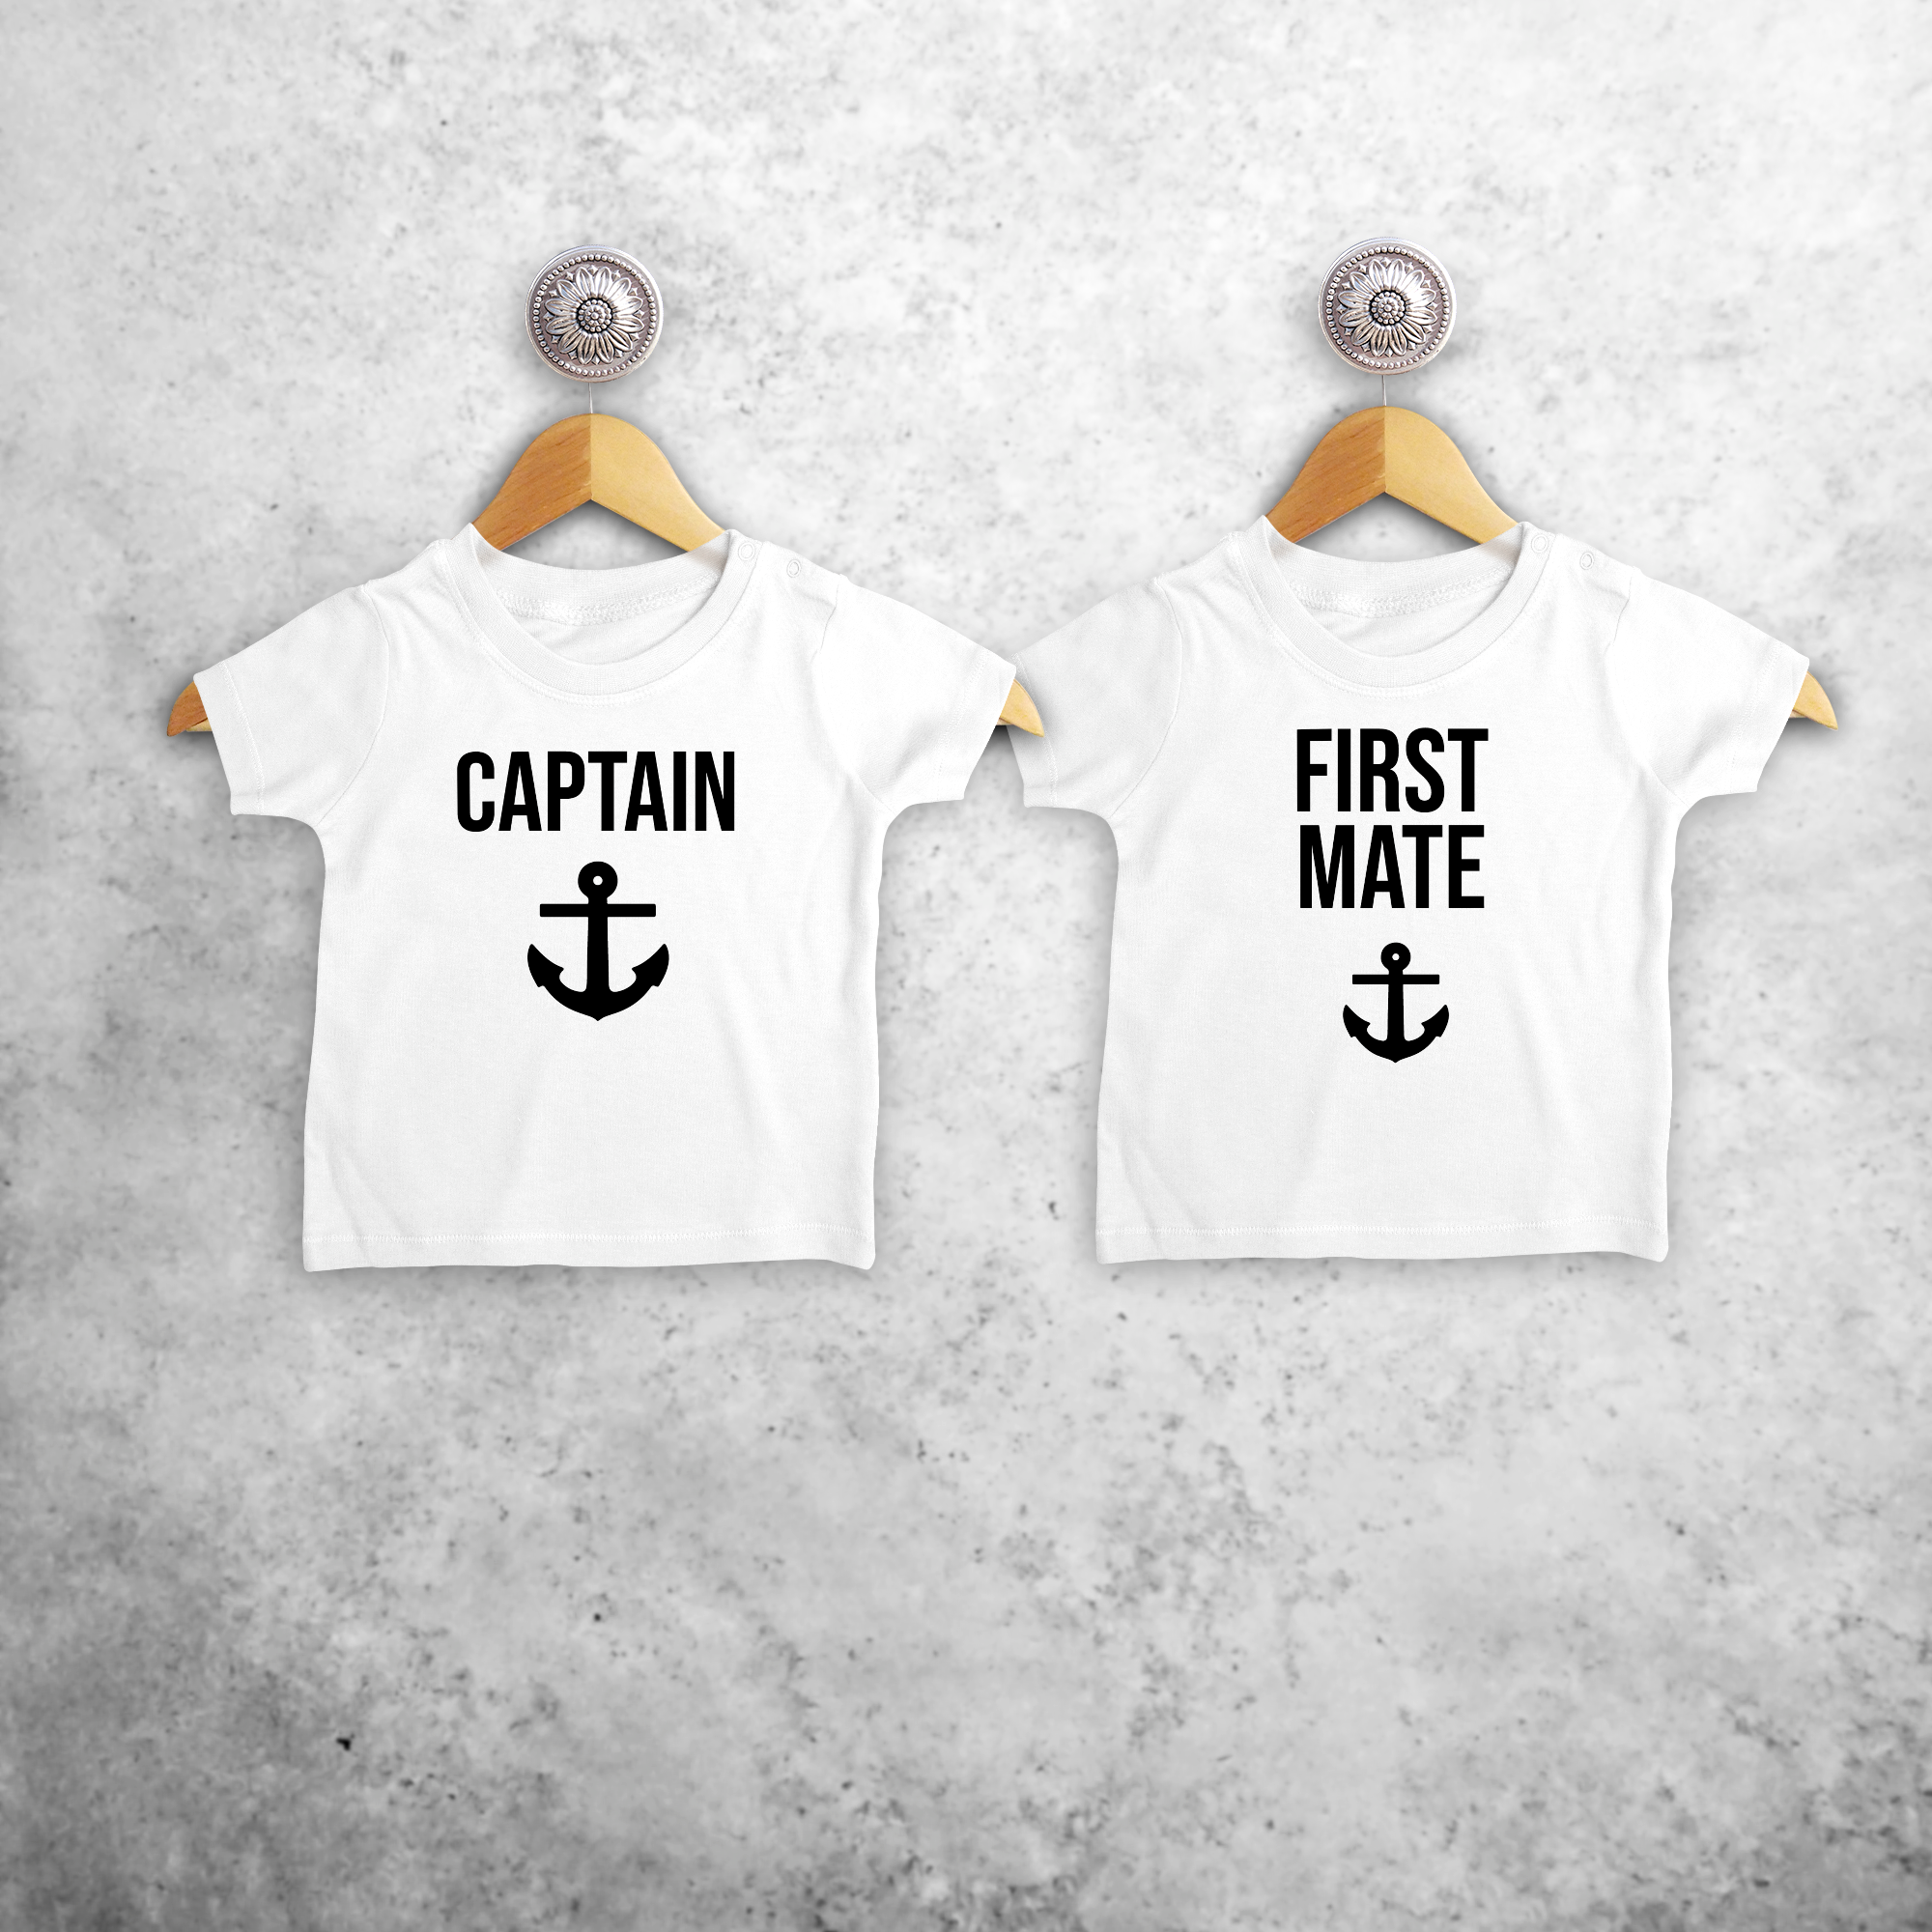 'Captain' & 'First mate' baby broer en zus shirts